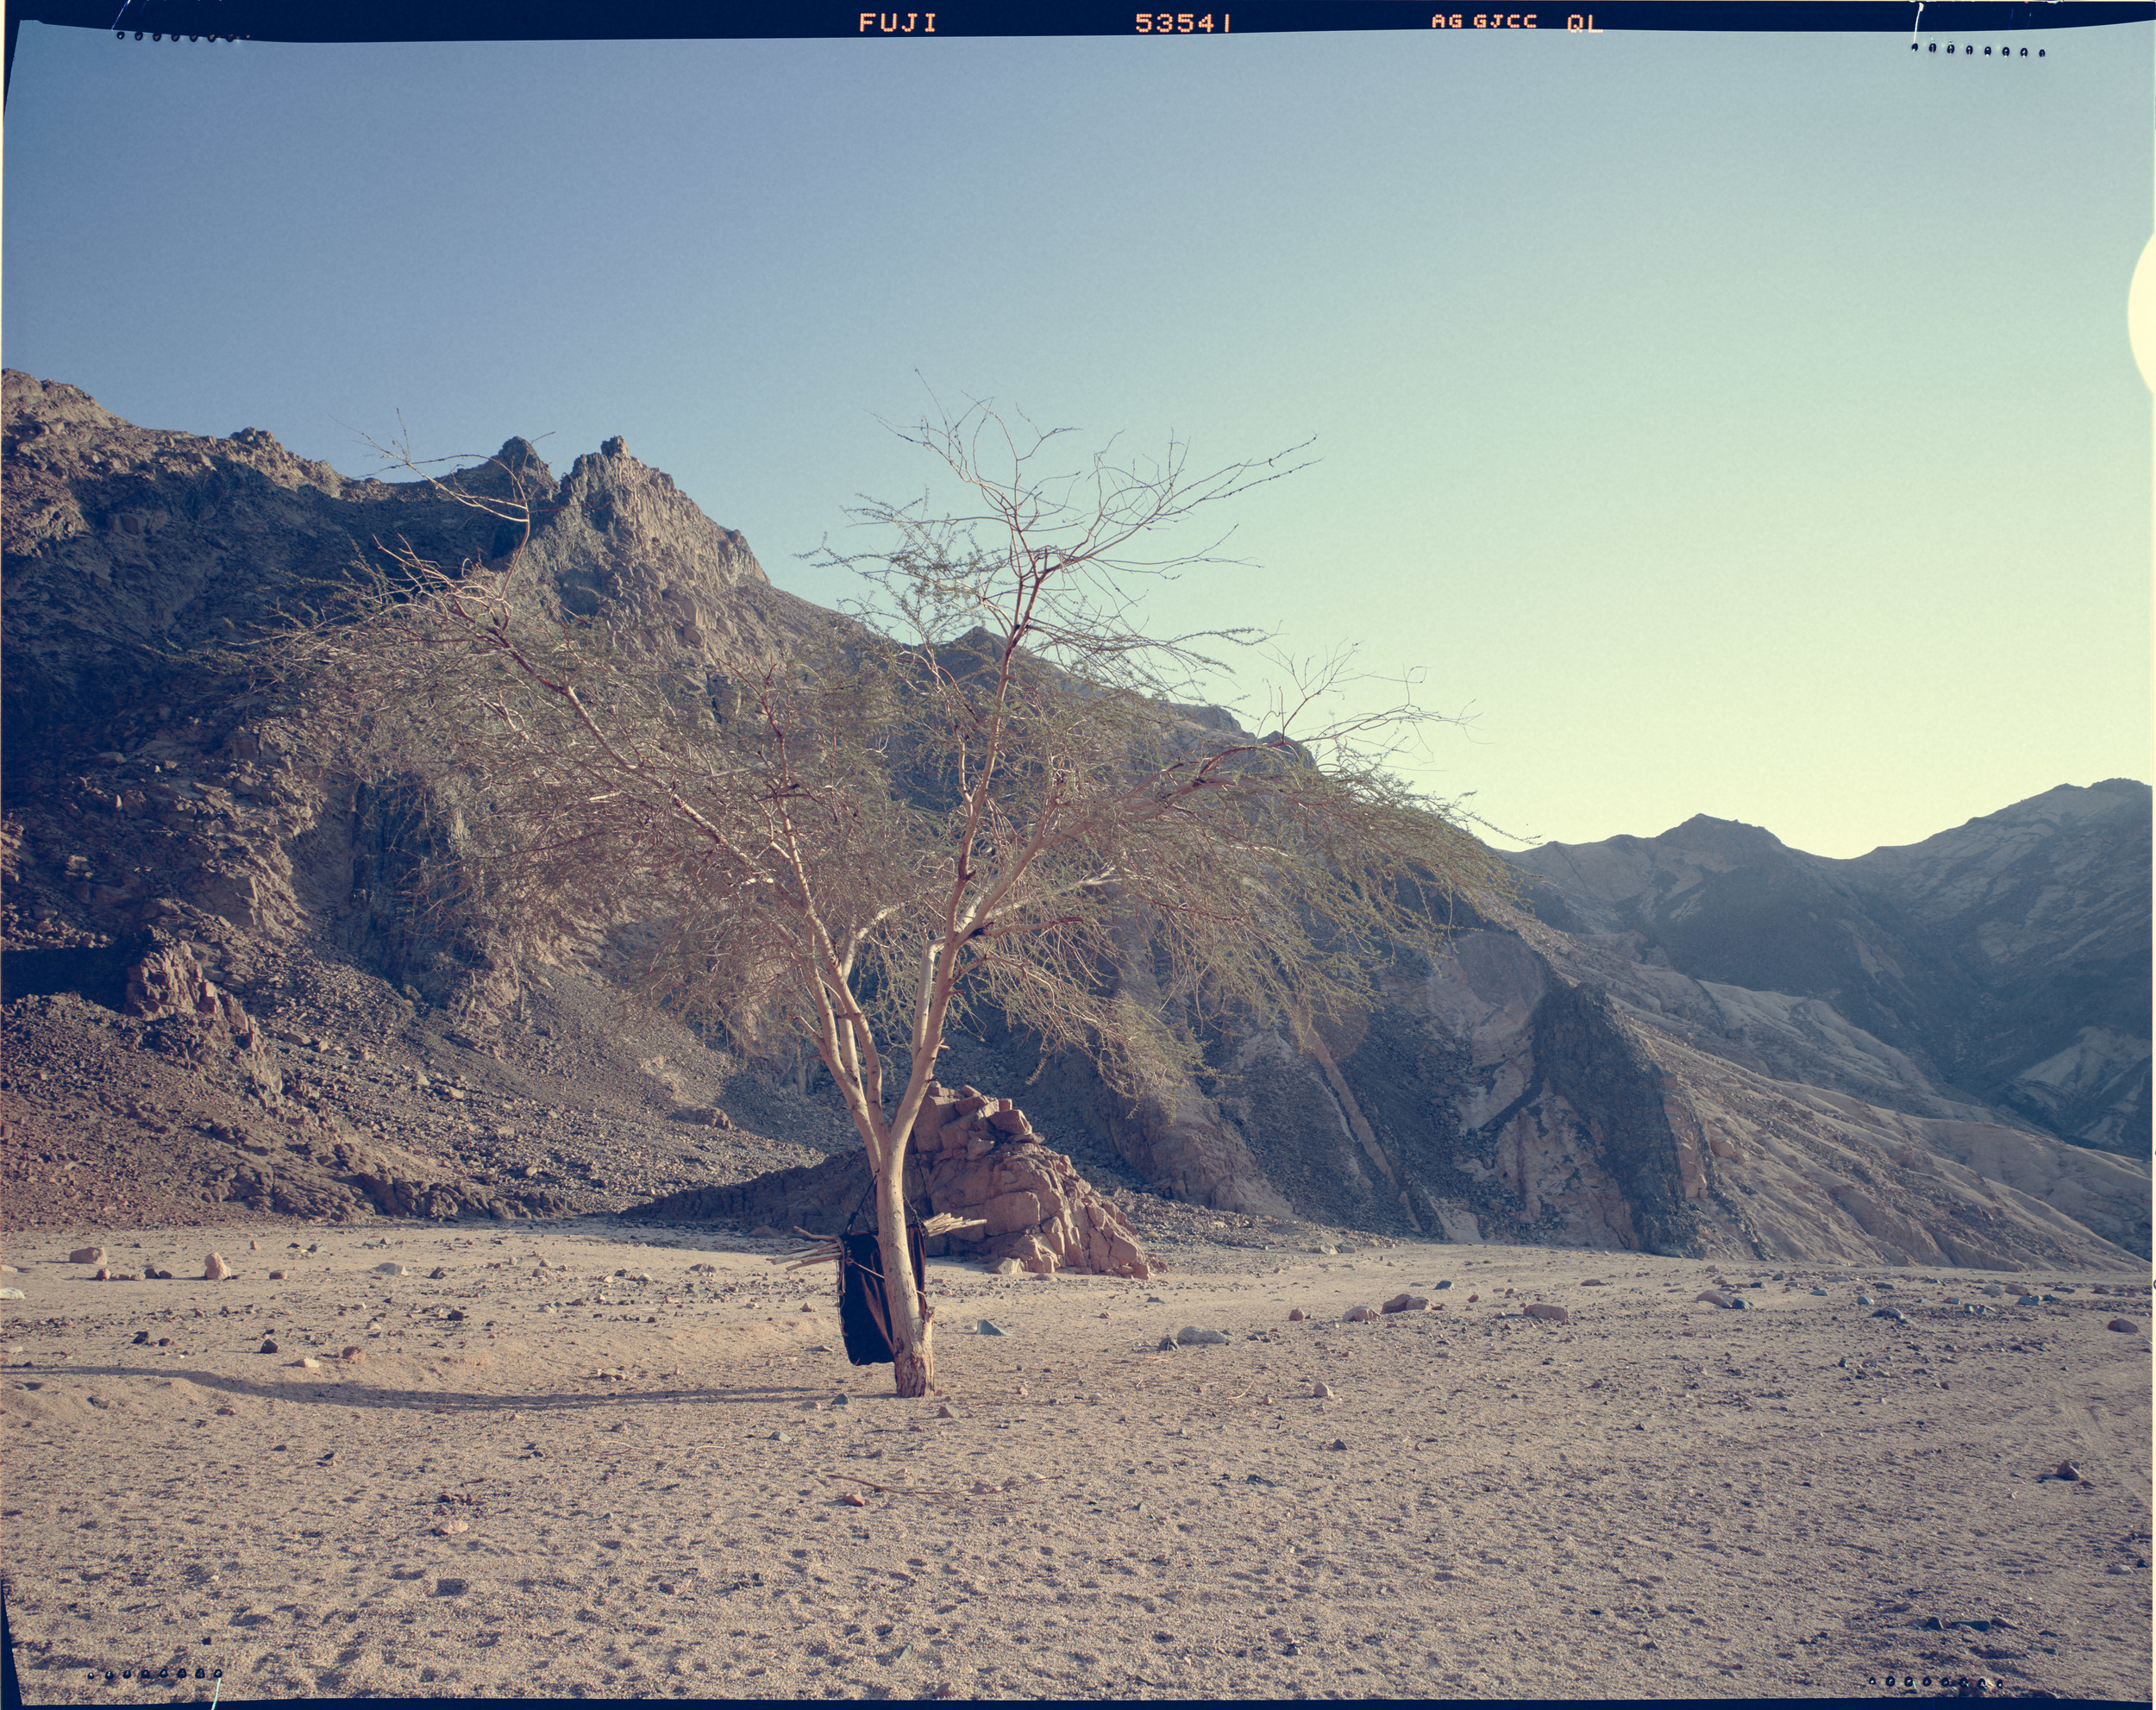 Achmed's Tent, Sinai Desert.